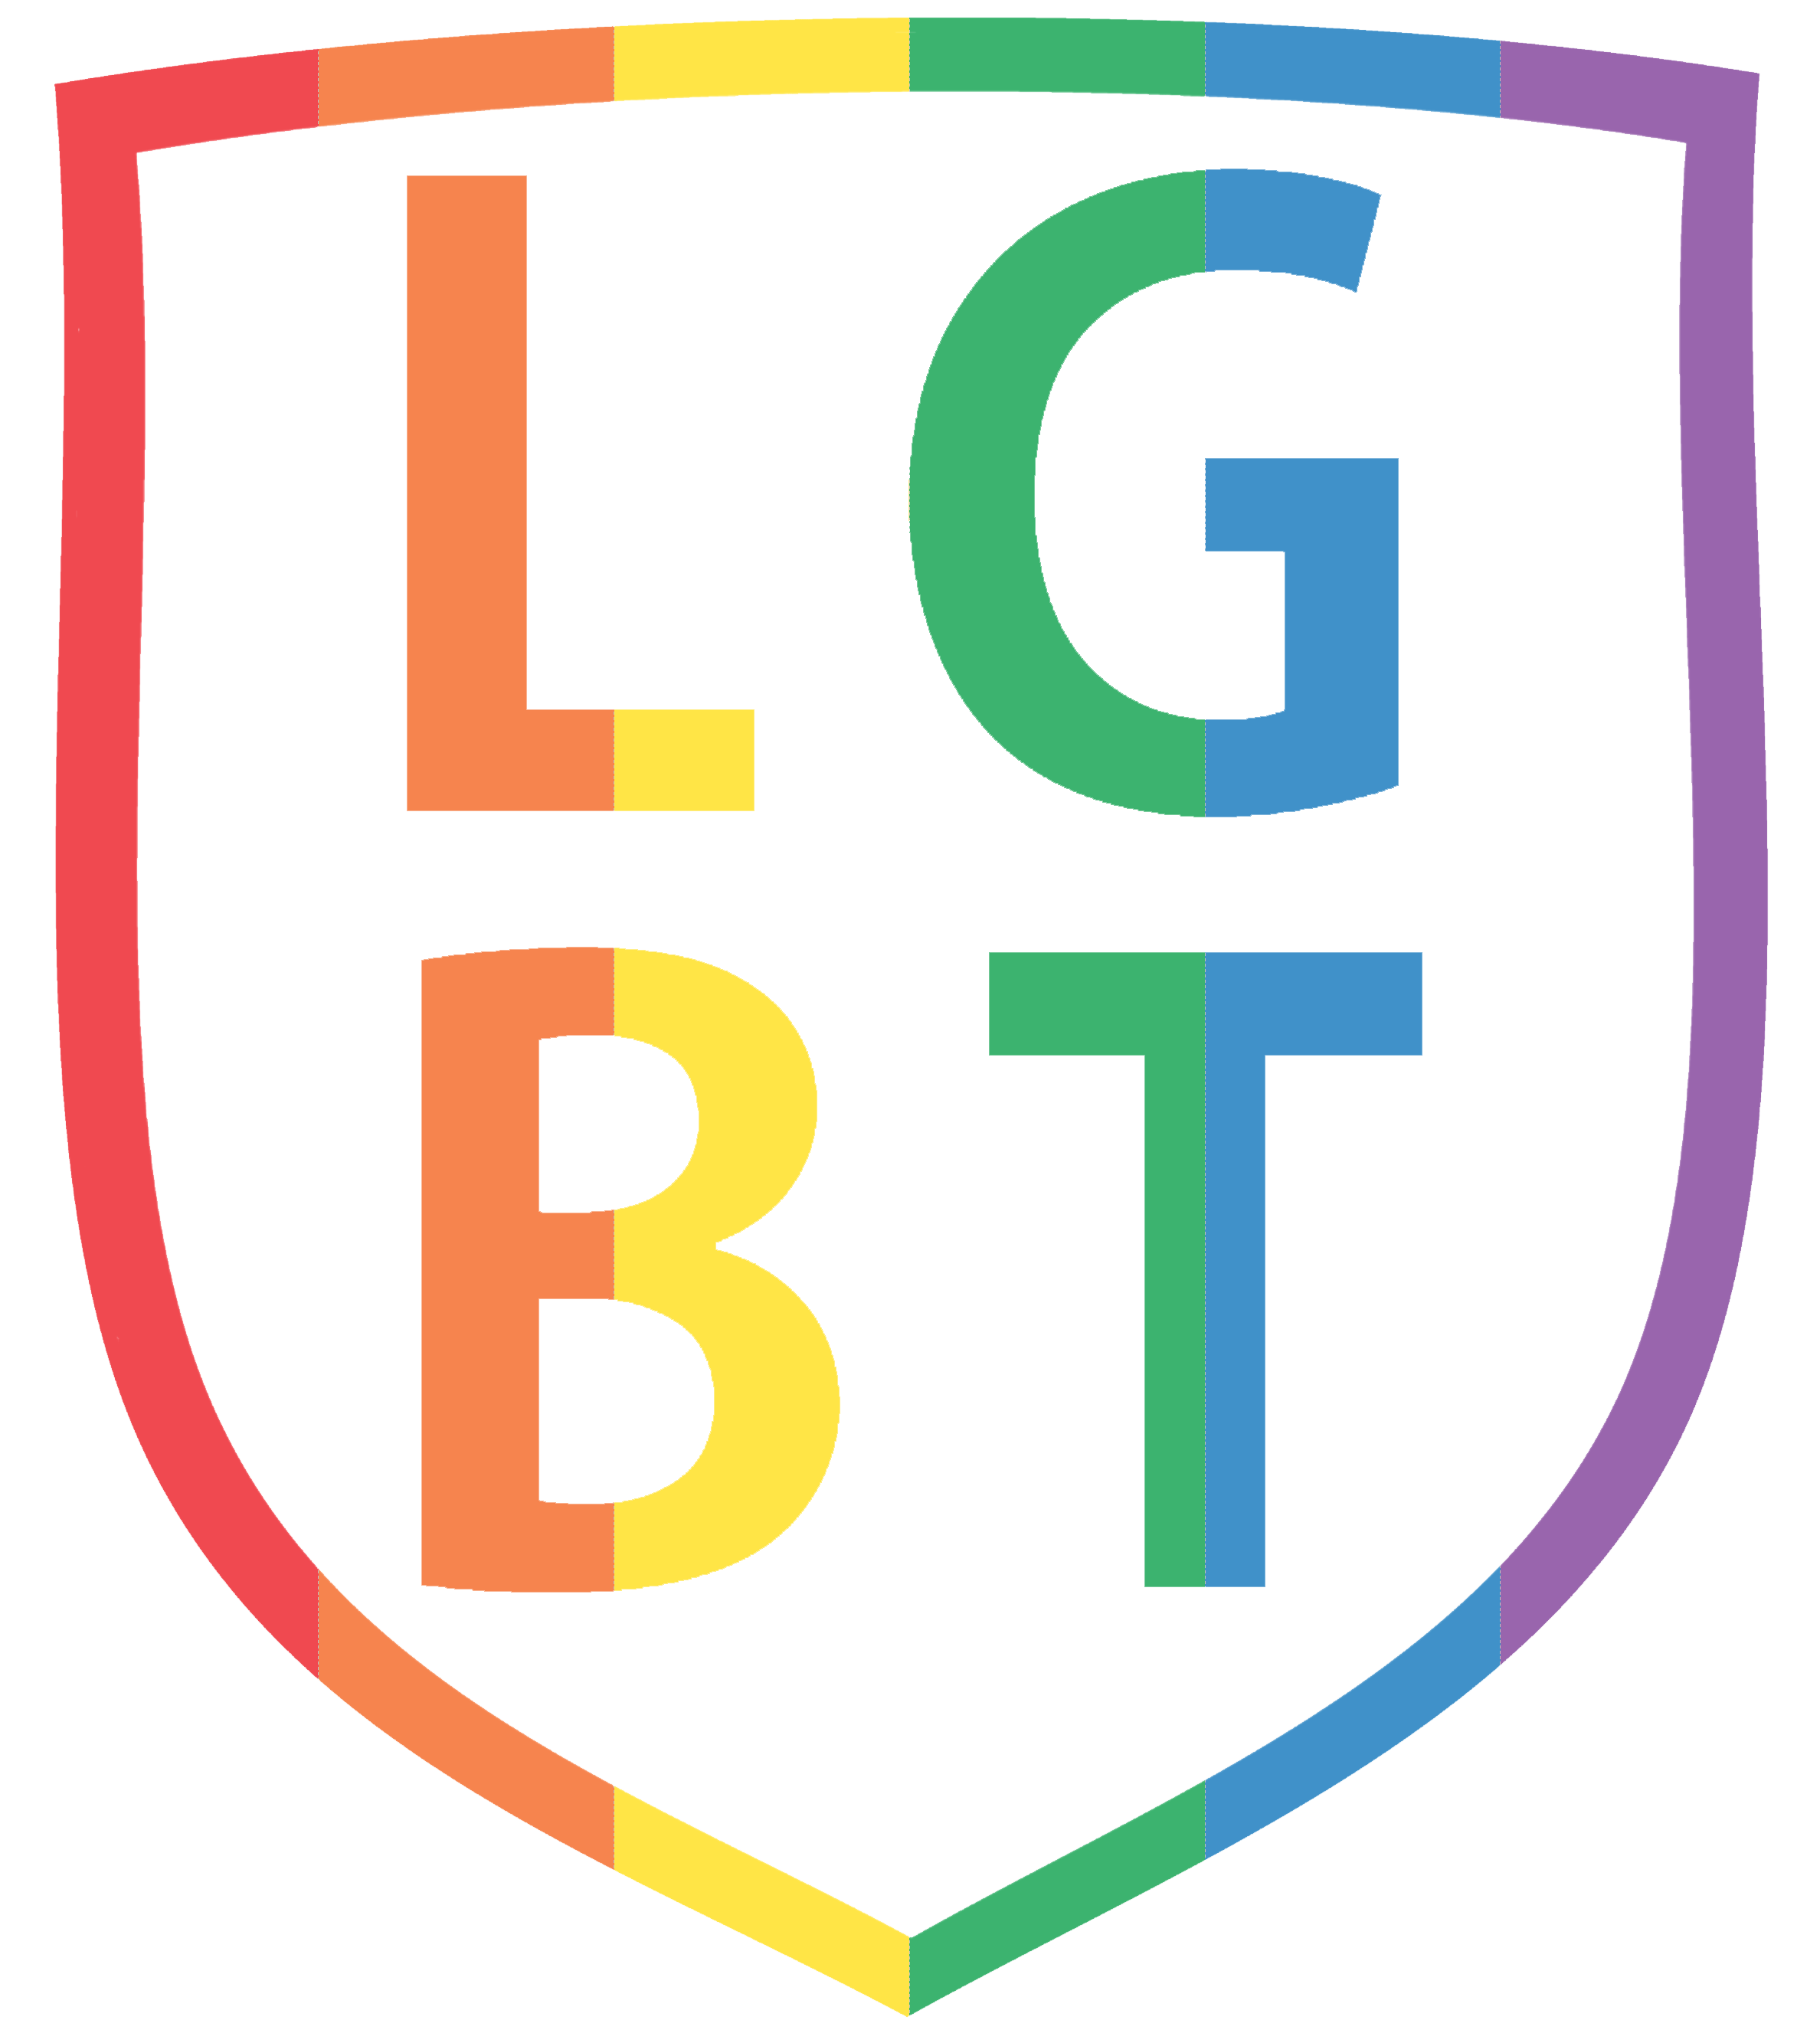 LGBTQ Logo - Lgbtq Clip Art Logo Png Images